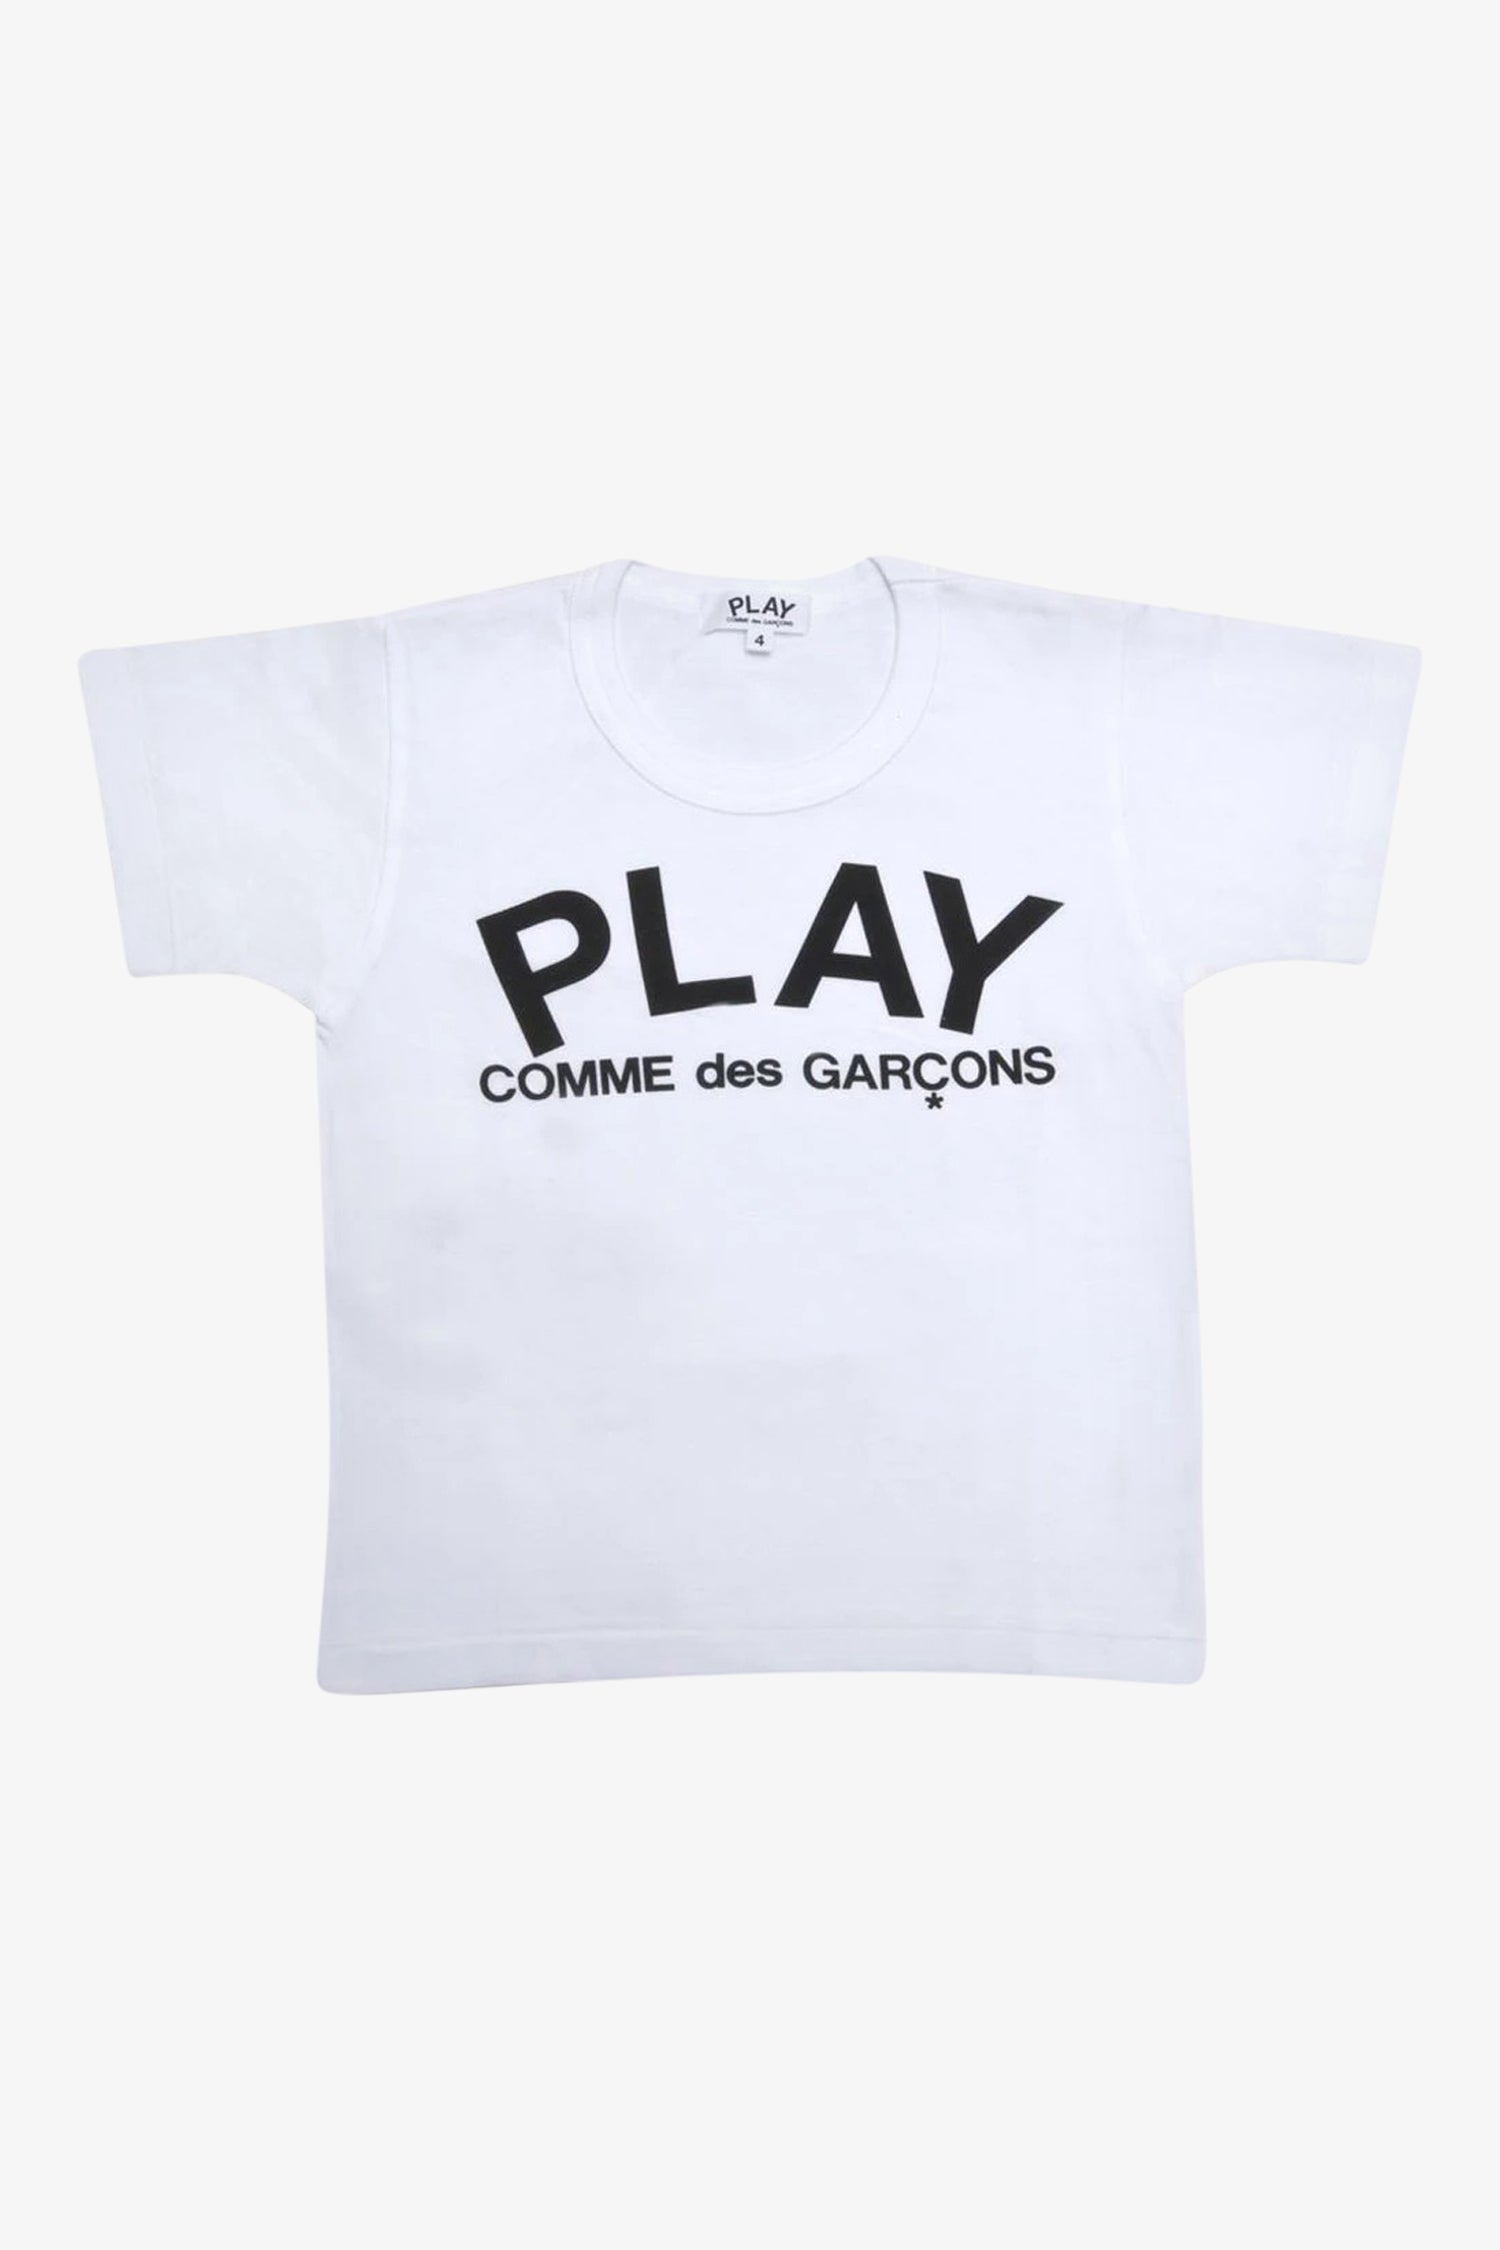 Selectshop FRAME - COMME DES GARCONS PLAY Black Logo T-shirt Kids Dubai